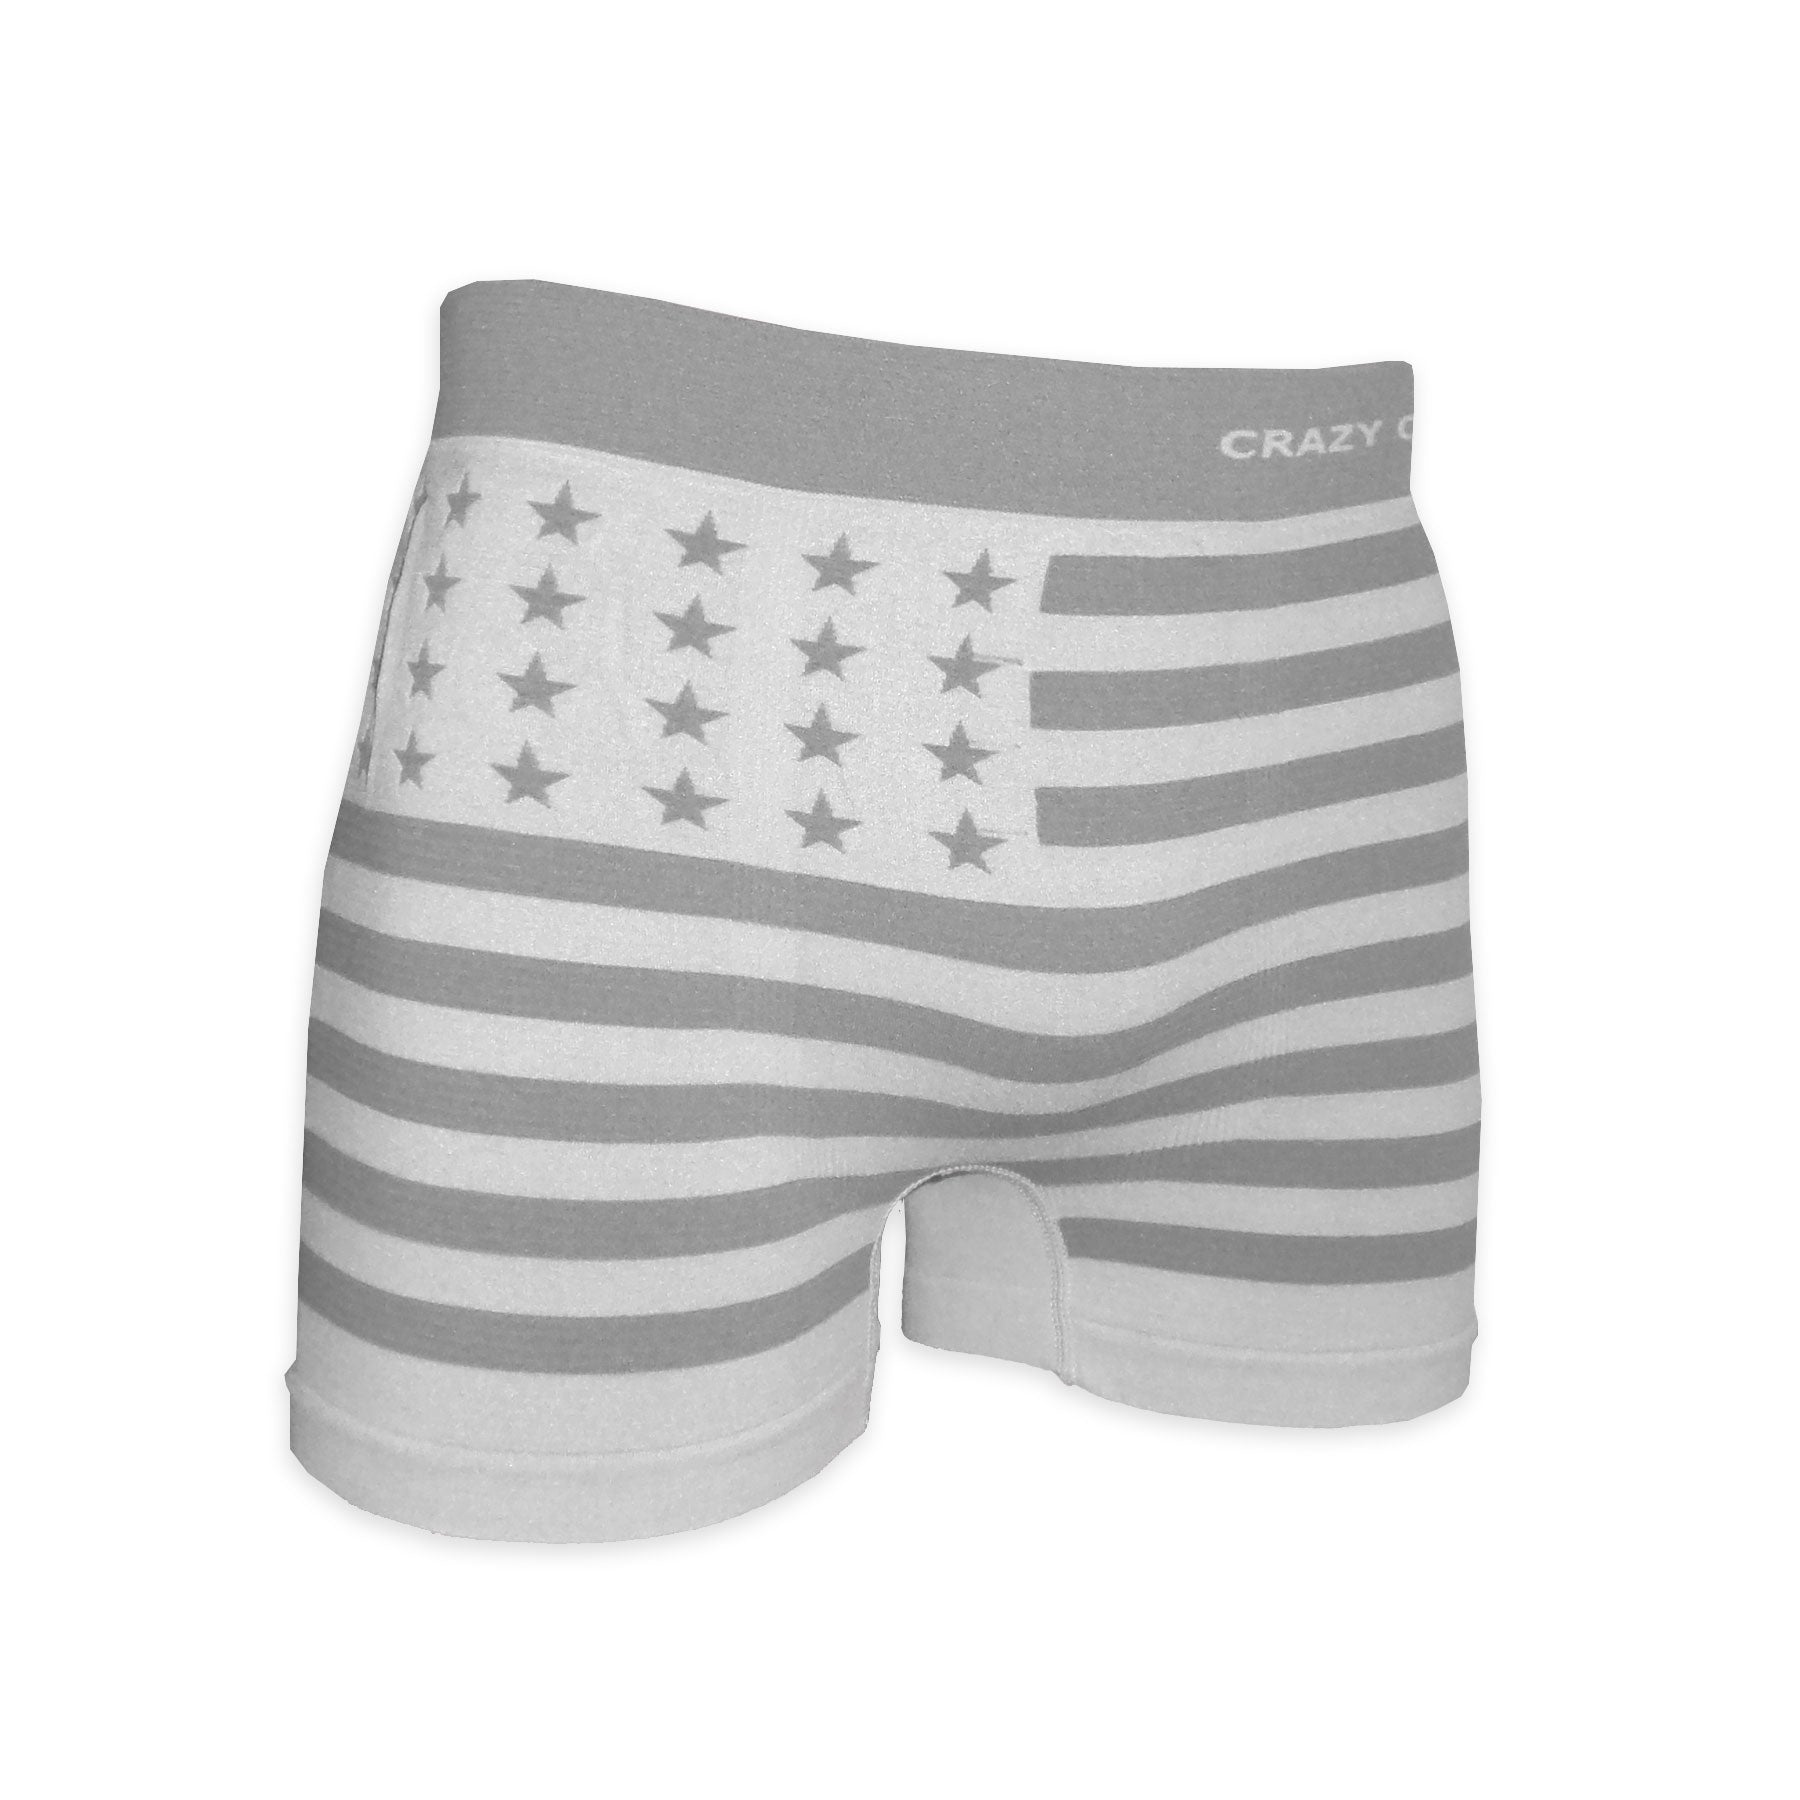 Crazy Cool Underwear Seamless Mens Boxer Briefs Underwear 6-Pack Set American  Flag